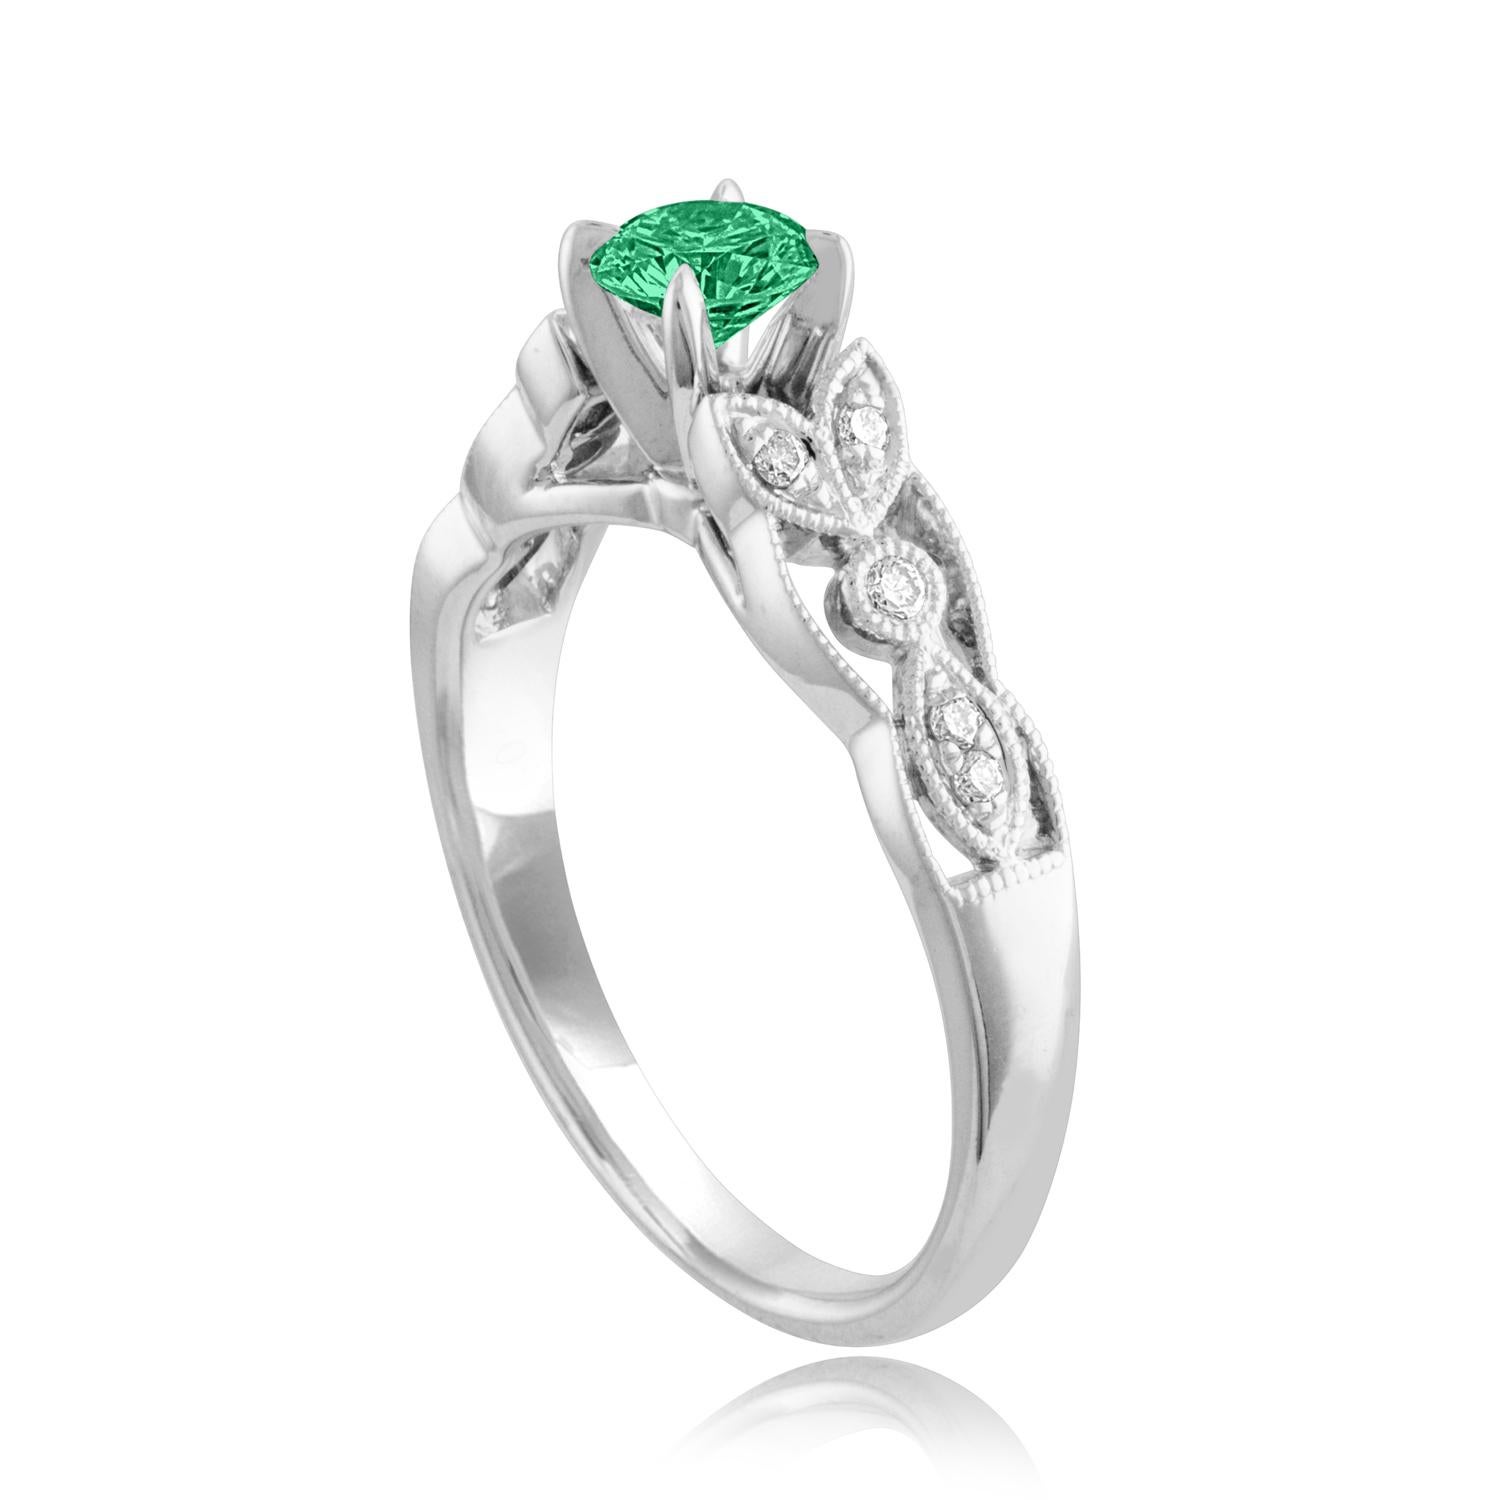 Schöner Diamant & Smaragd Milgrain Ring
Der Ring ist aus 18 Karat Weißgold.
Es sind 0.09 Karat in Diamanten F/G VS/SI
Das Zentrum ist rund 0.38 Karat Smaragd.
Der Smaragd ist AGL-zertifiziert.
Der Ring ist eine Größe 6.75, sizable.
Der Ring wiegt